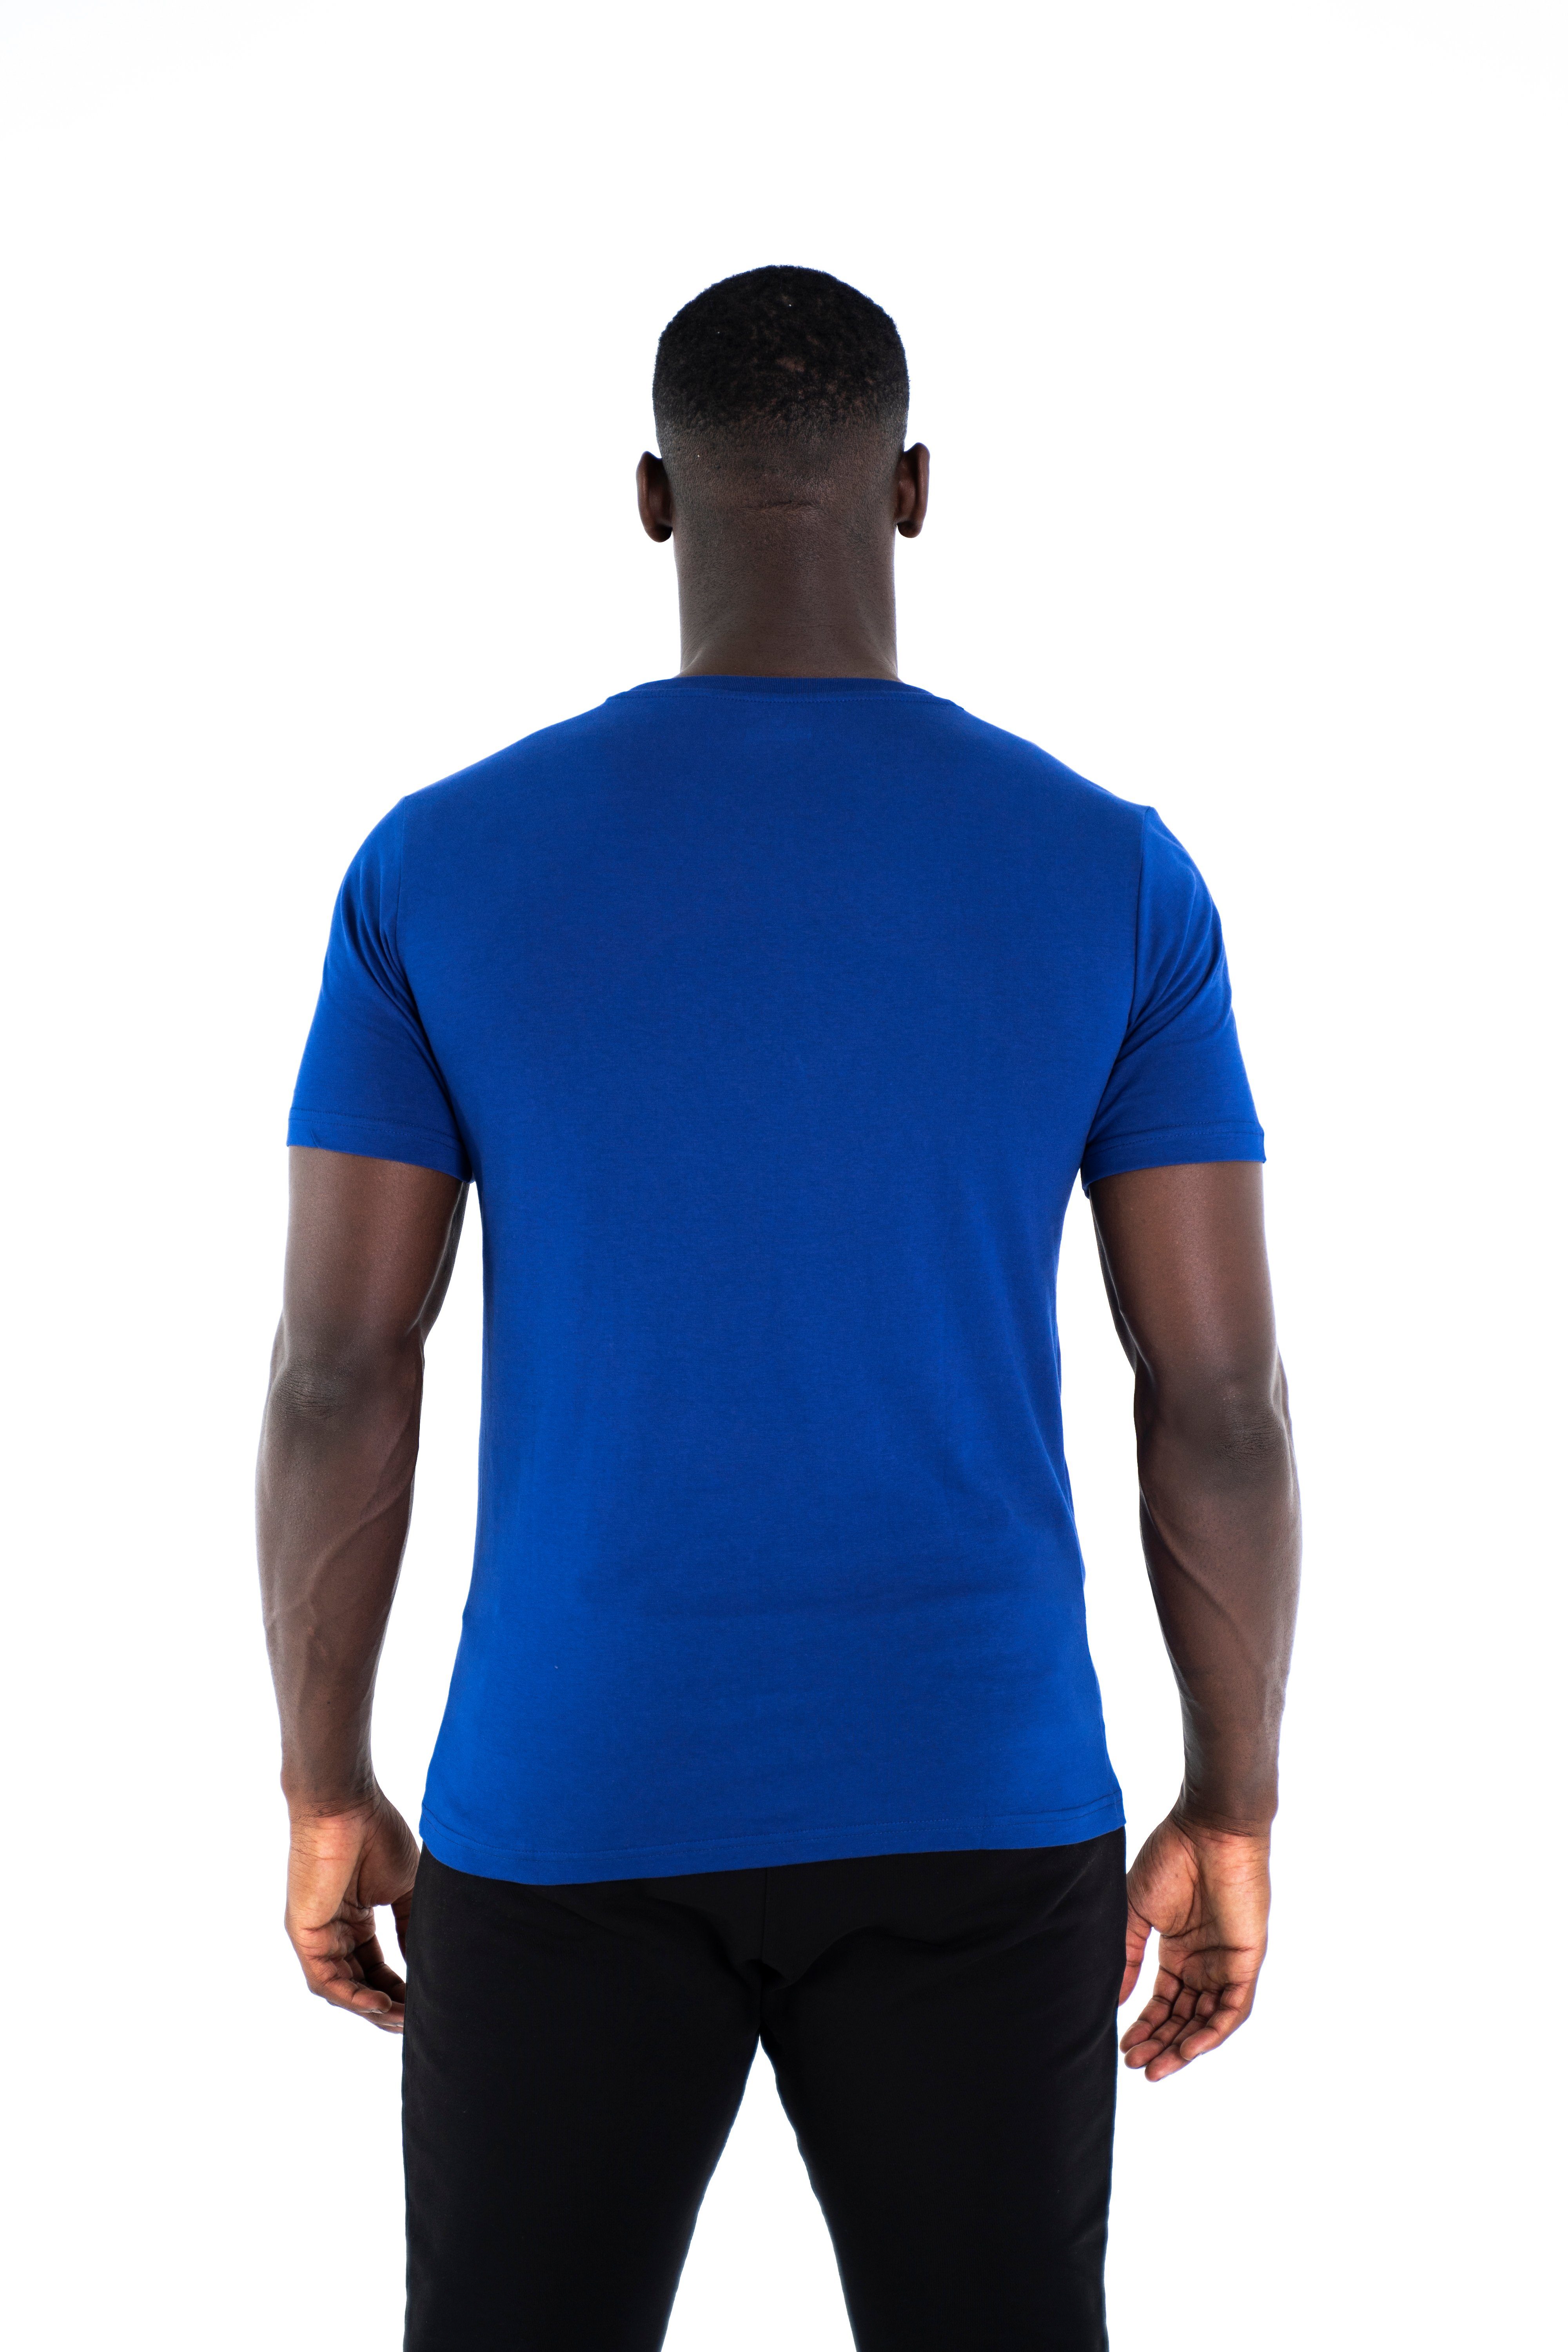 Universum Sportwear T-Shirt Modern 100% C-Neck Rundhalsausschnitt, Shirt Baumwoll Cotton blau